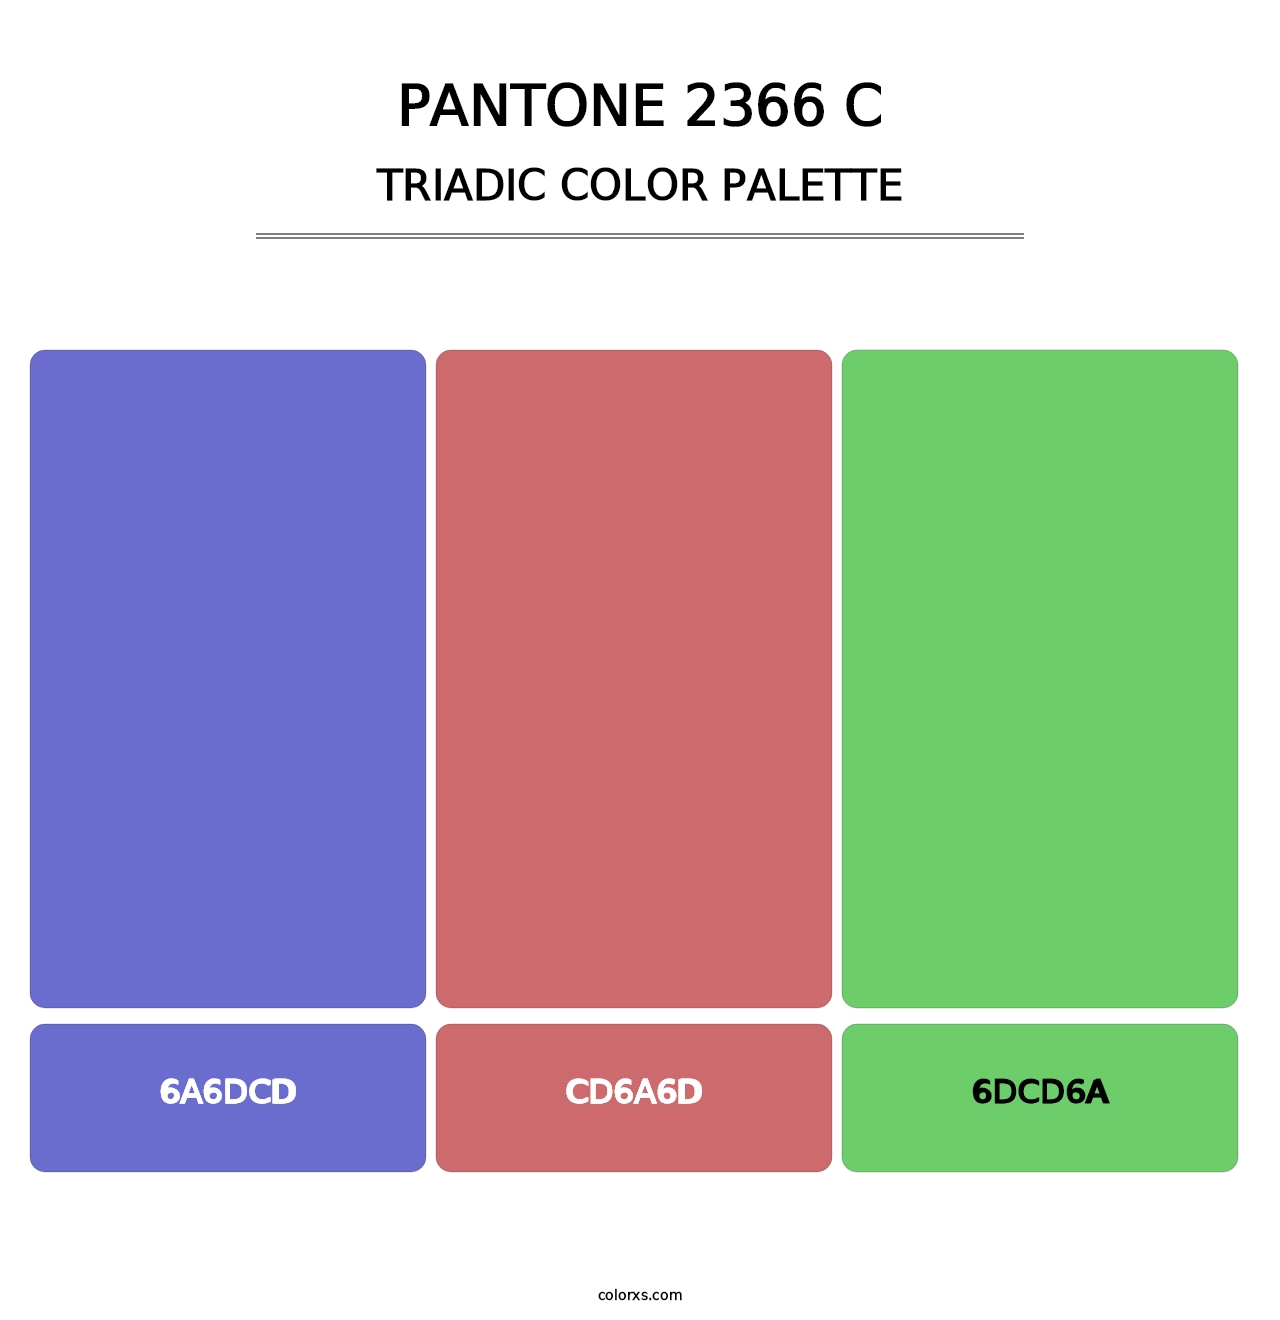 PANTONE 2366 C - Triadic Color Palette